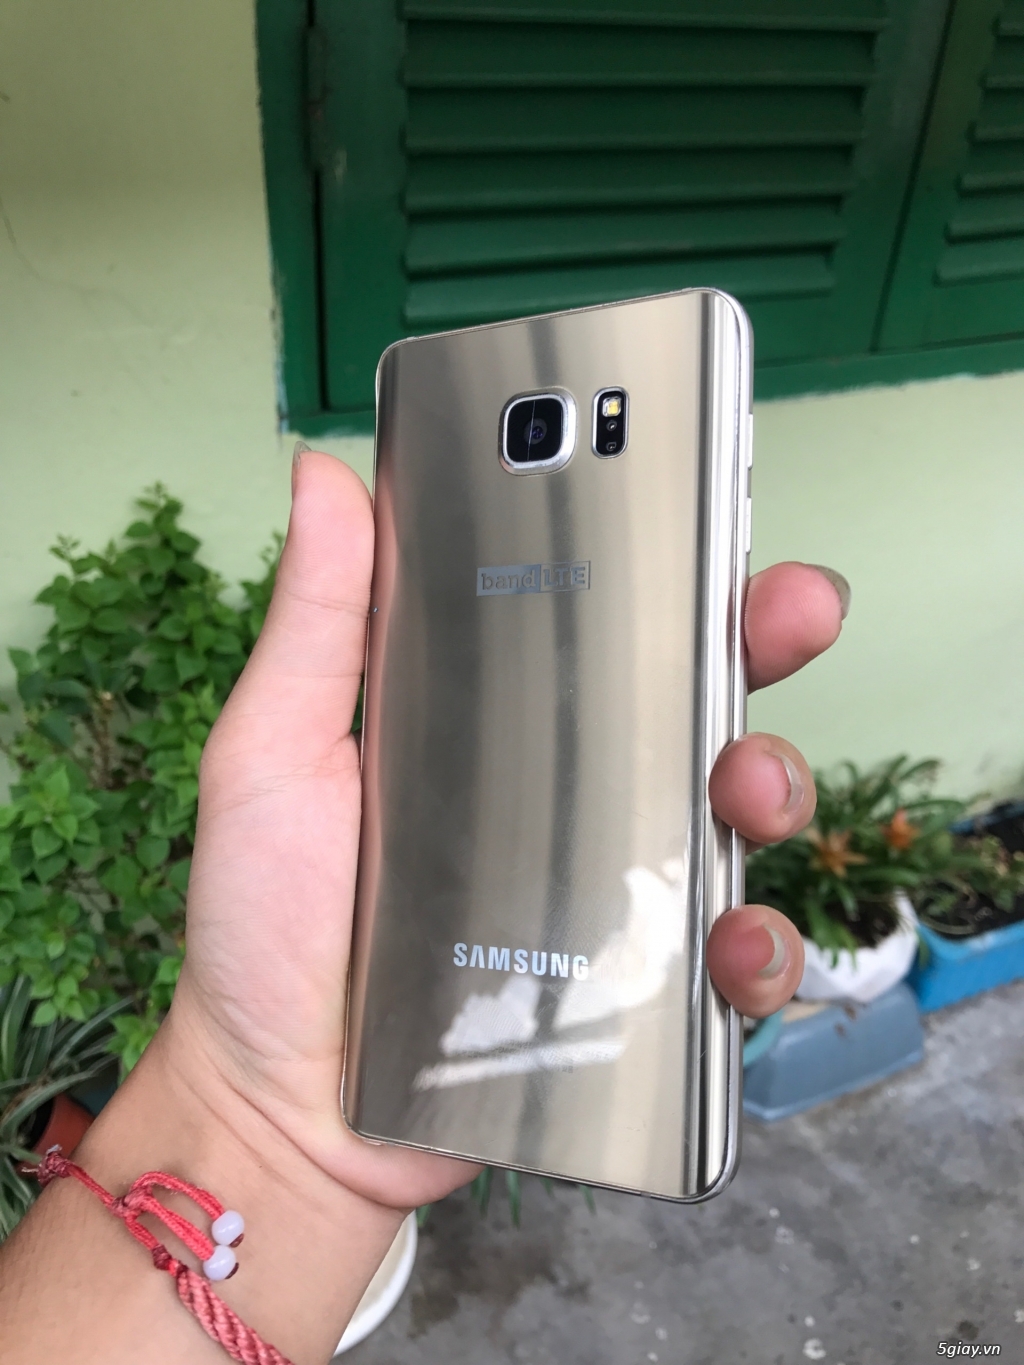 Samsung Galaxy NOTE 5, Ngoại hình đẹp, chức năng hoàn hảo - 3